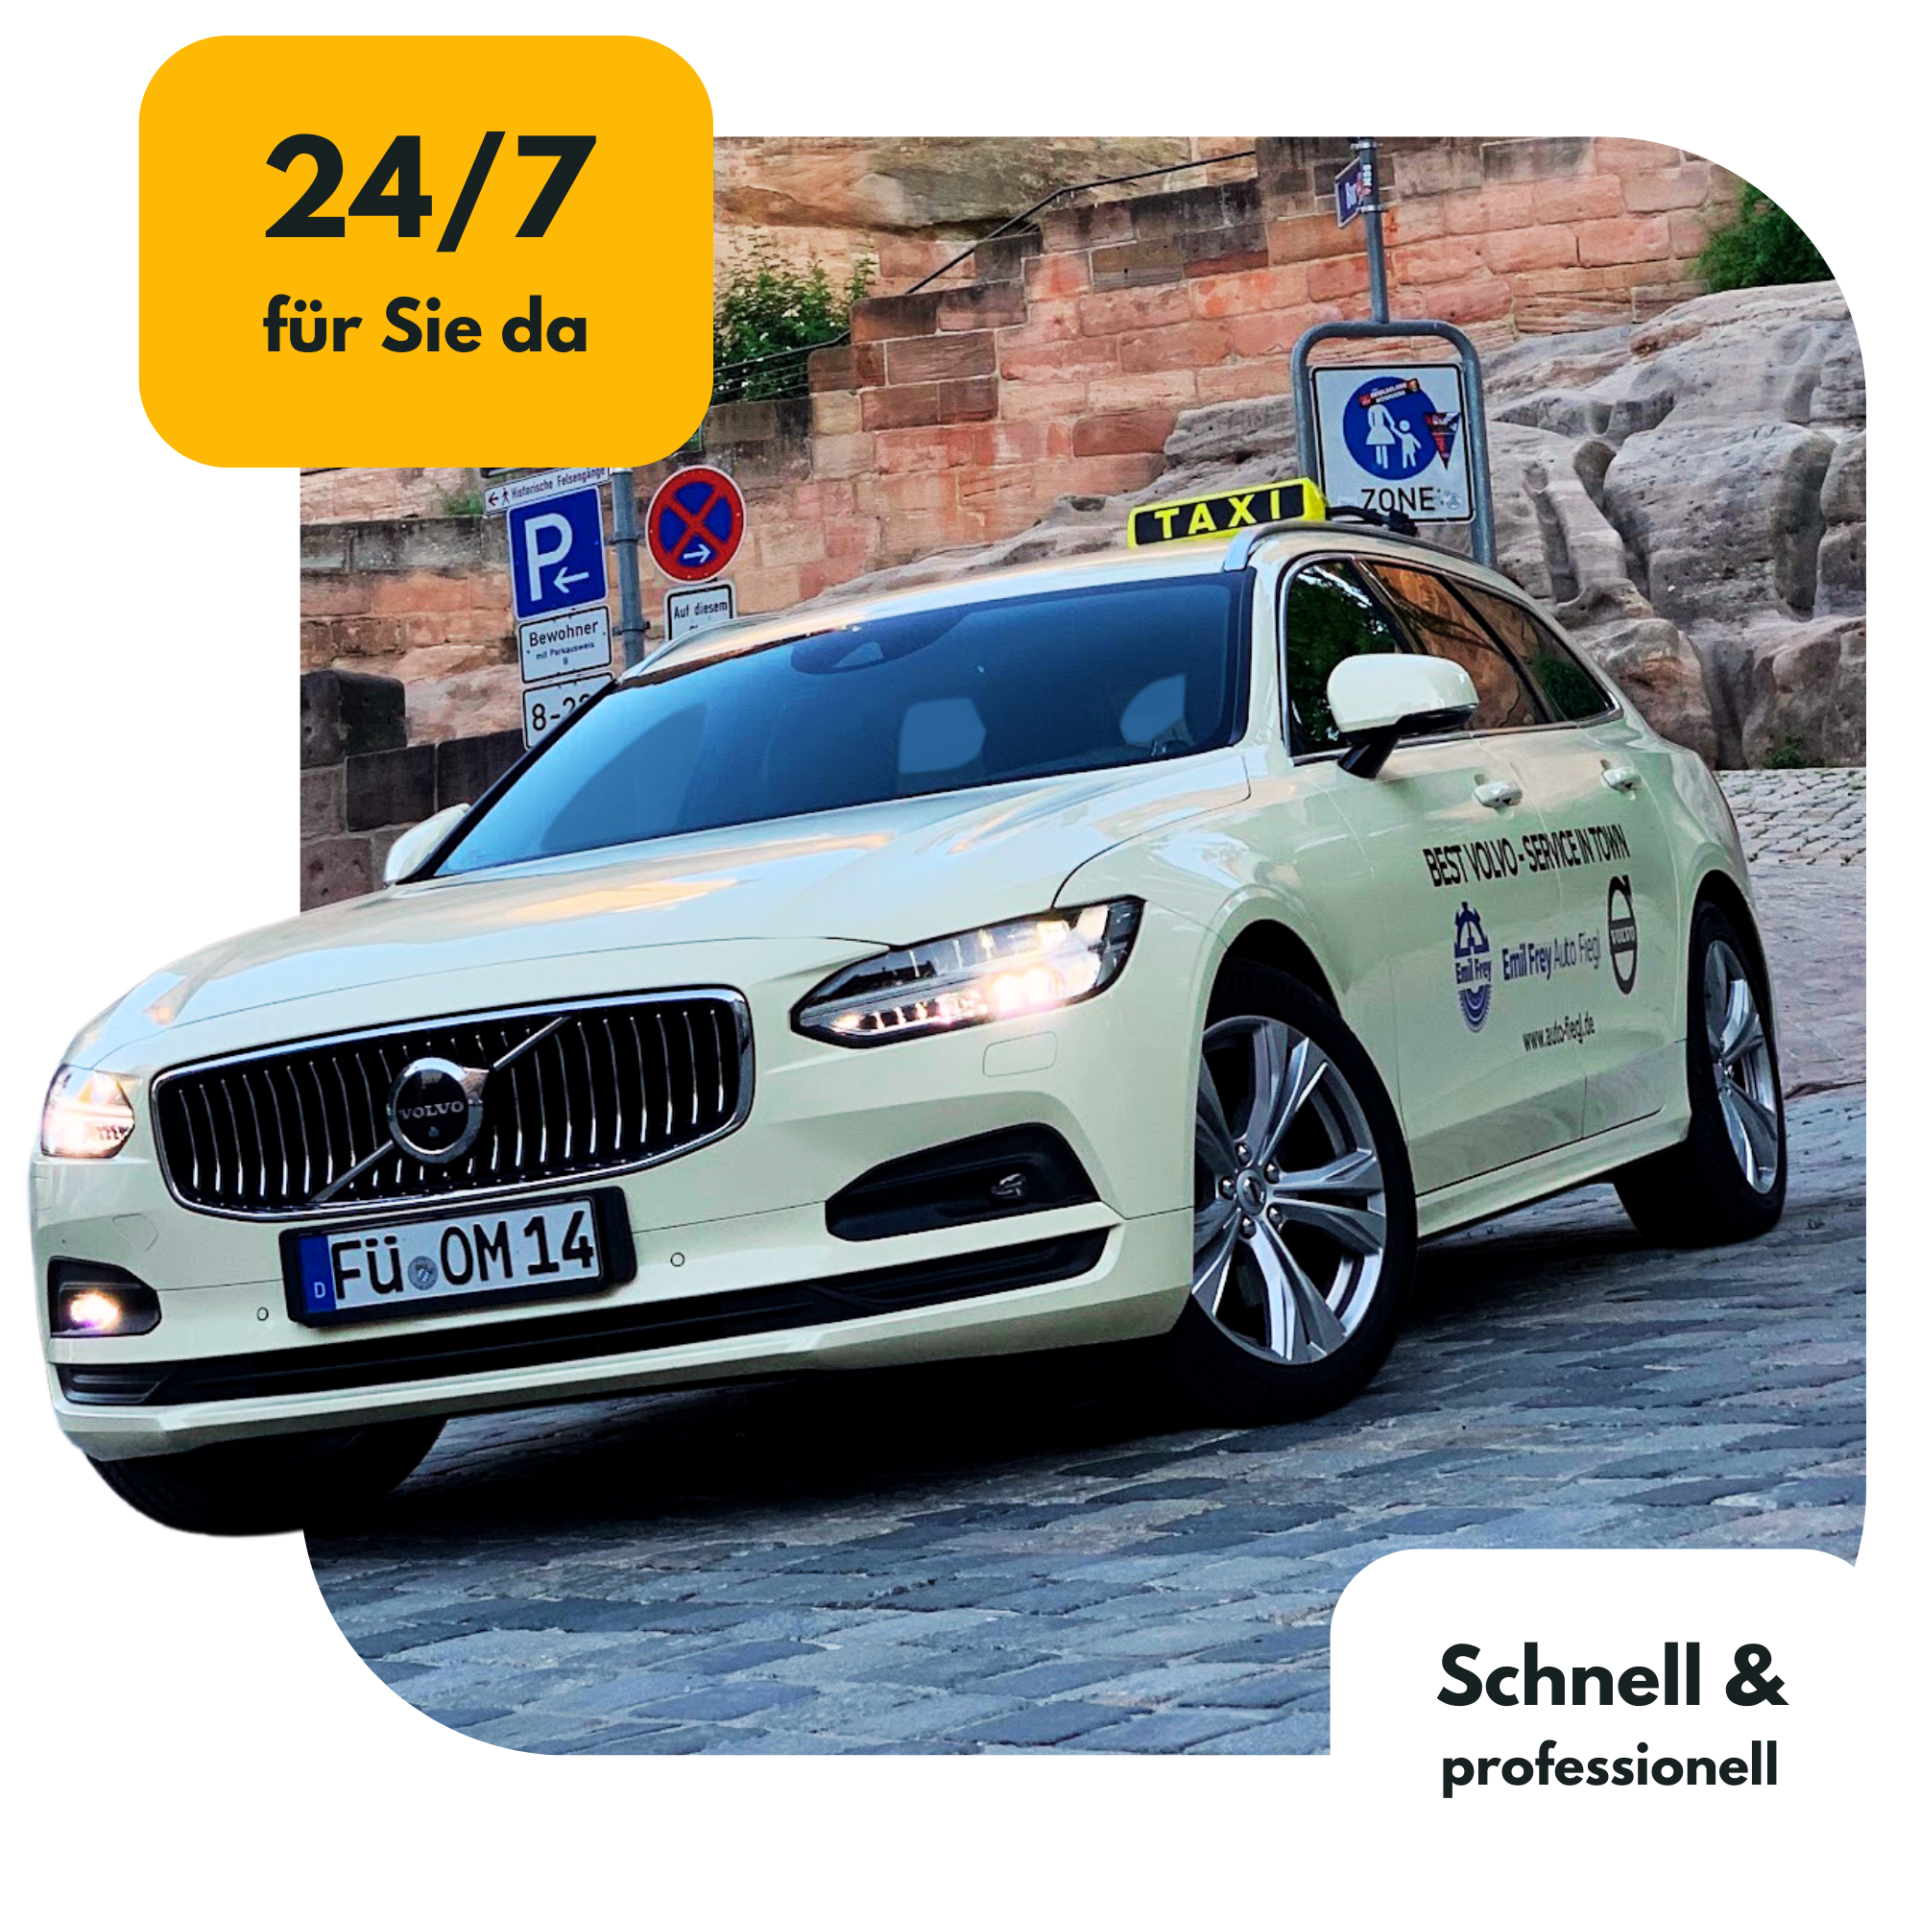 Titelbild der Website AS Taxi Fürth und Fahrdienst